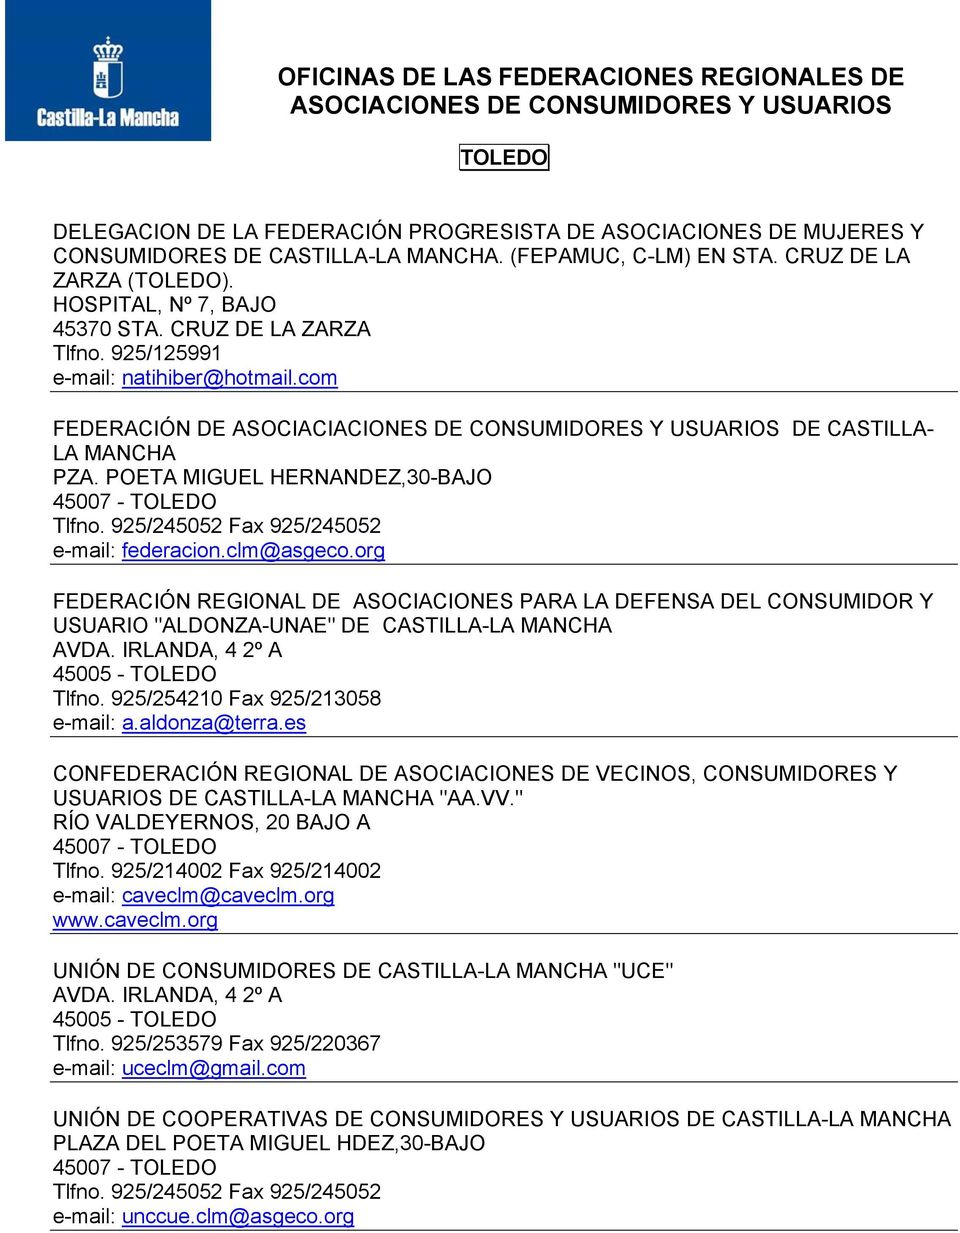 POETA MIGUEL HERNANDEZ,30-BAJO 45007 - TOLEDO Tlfno. 925/245052 Fax 925/245052 e-mail: federacion.clm@asgeco.